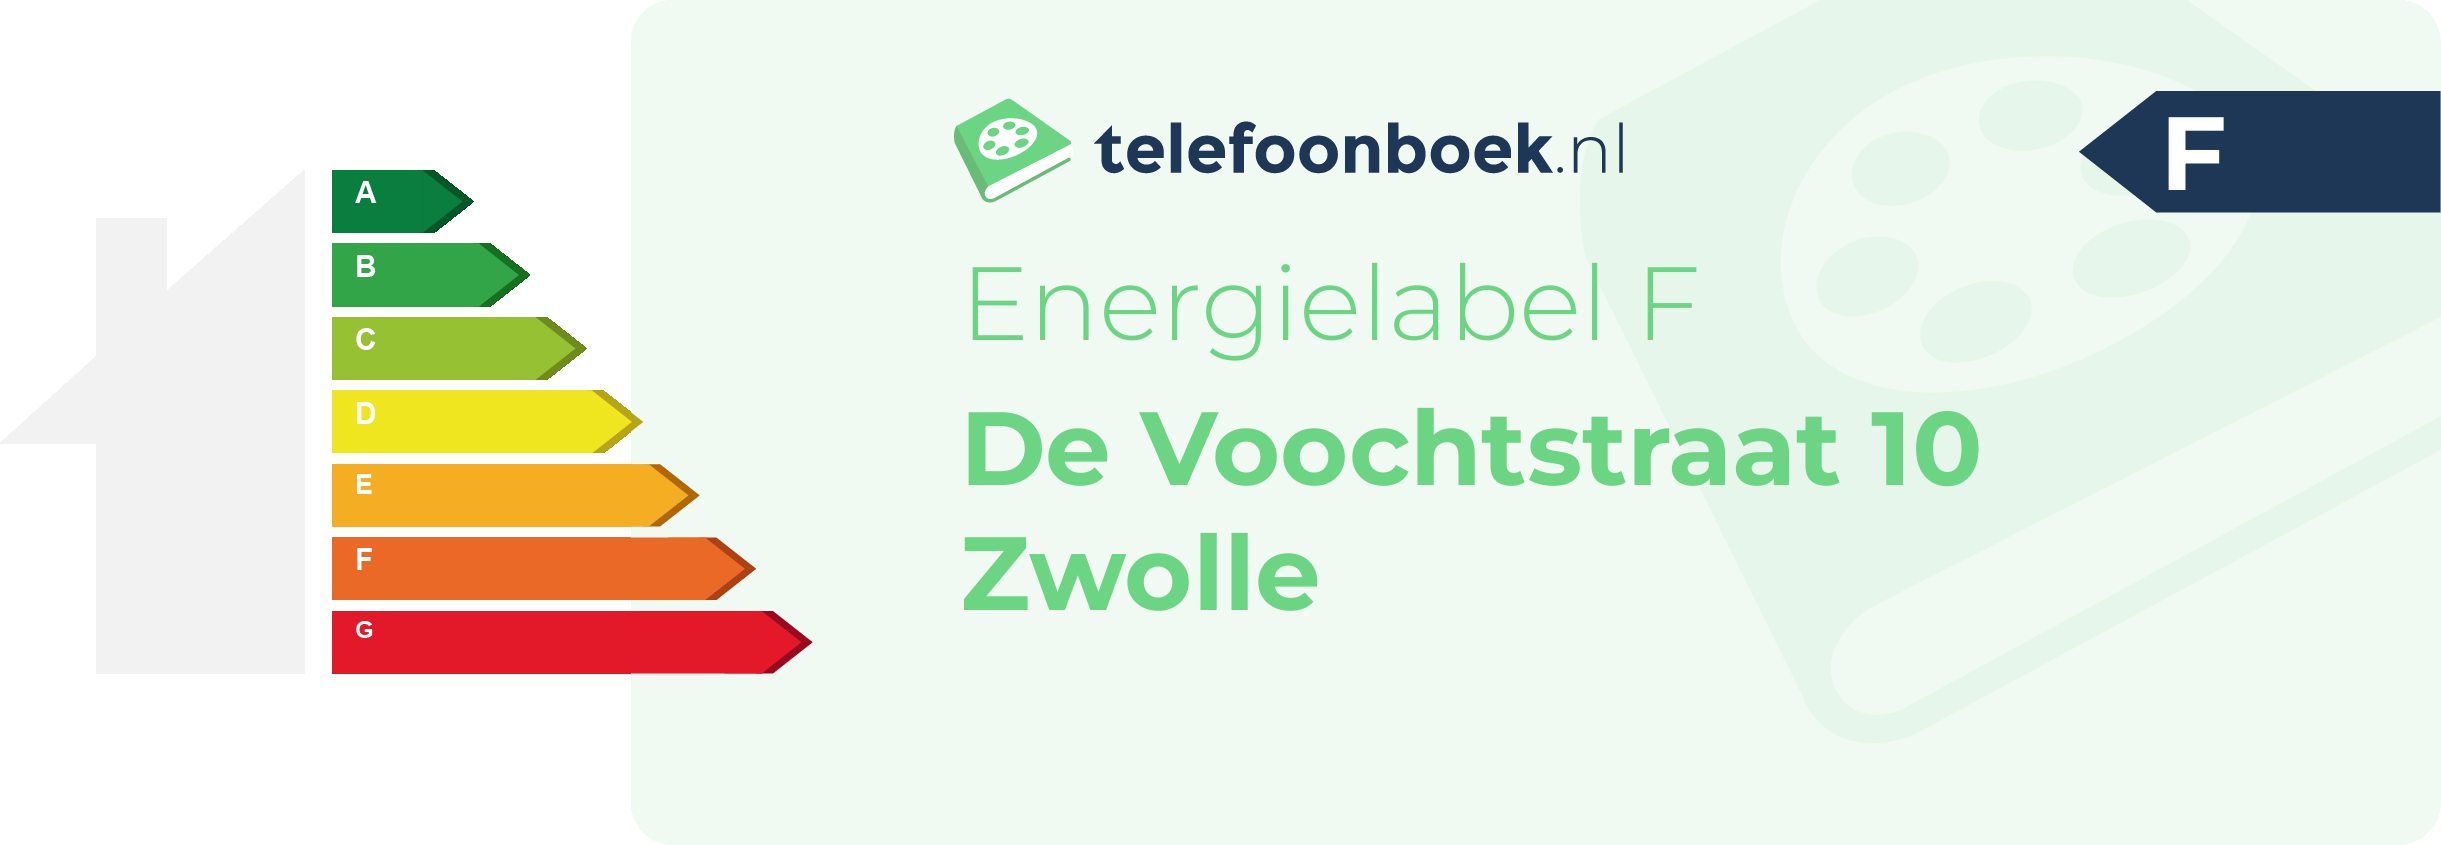 Energielabel De Voochtstraat 10 Zwolle